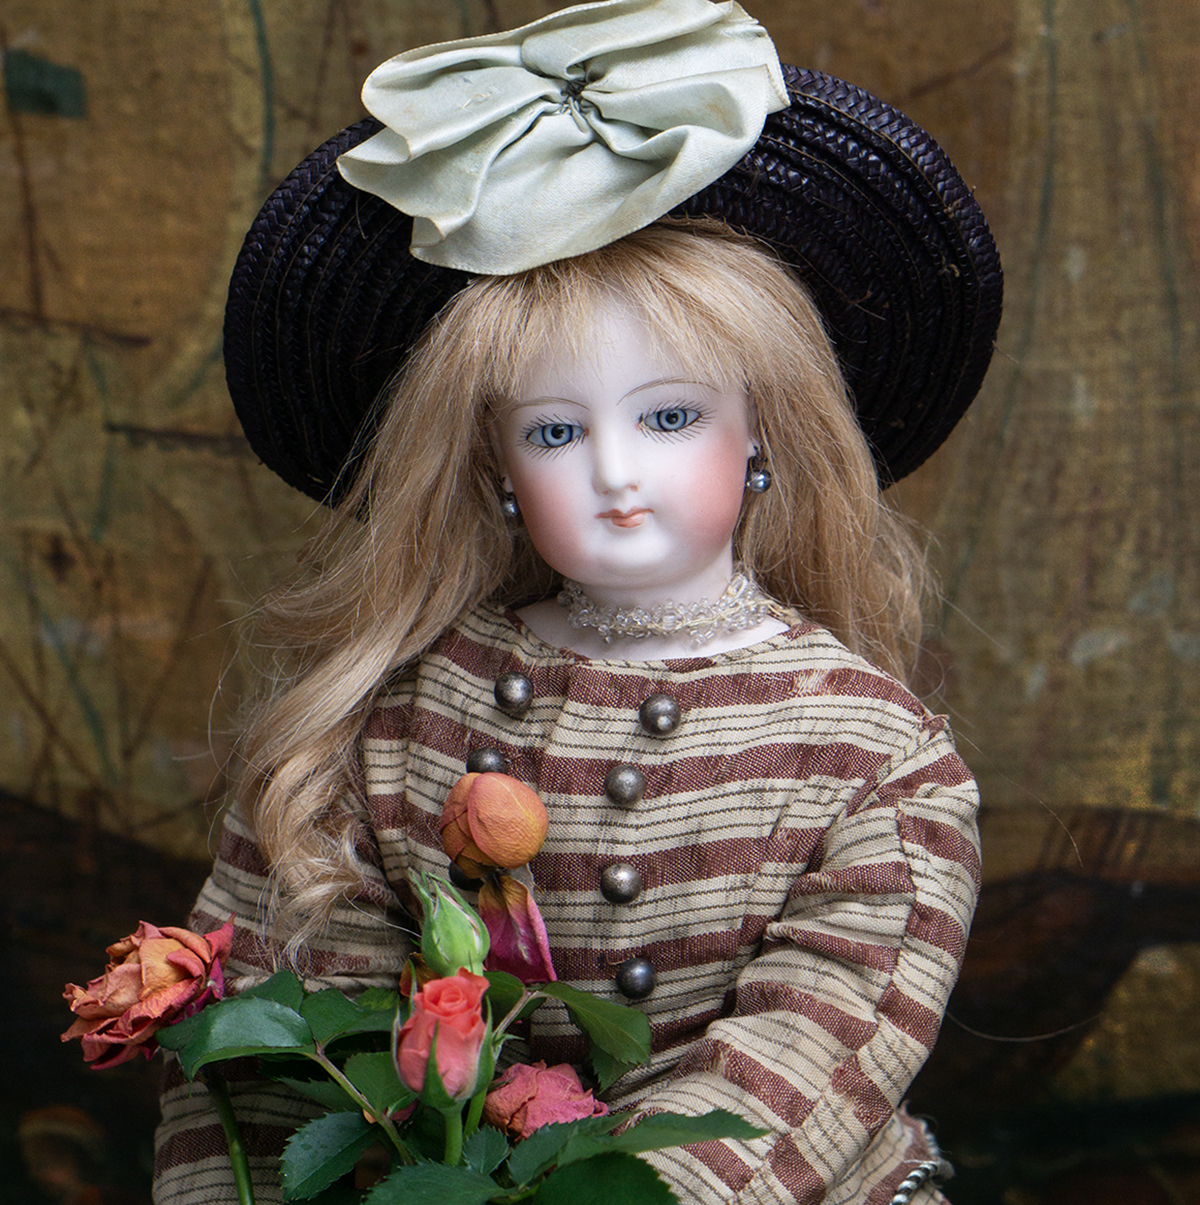 Gesland Fashion doll